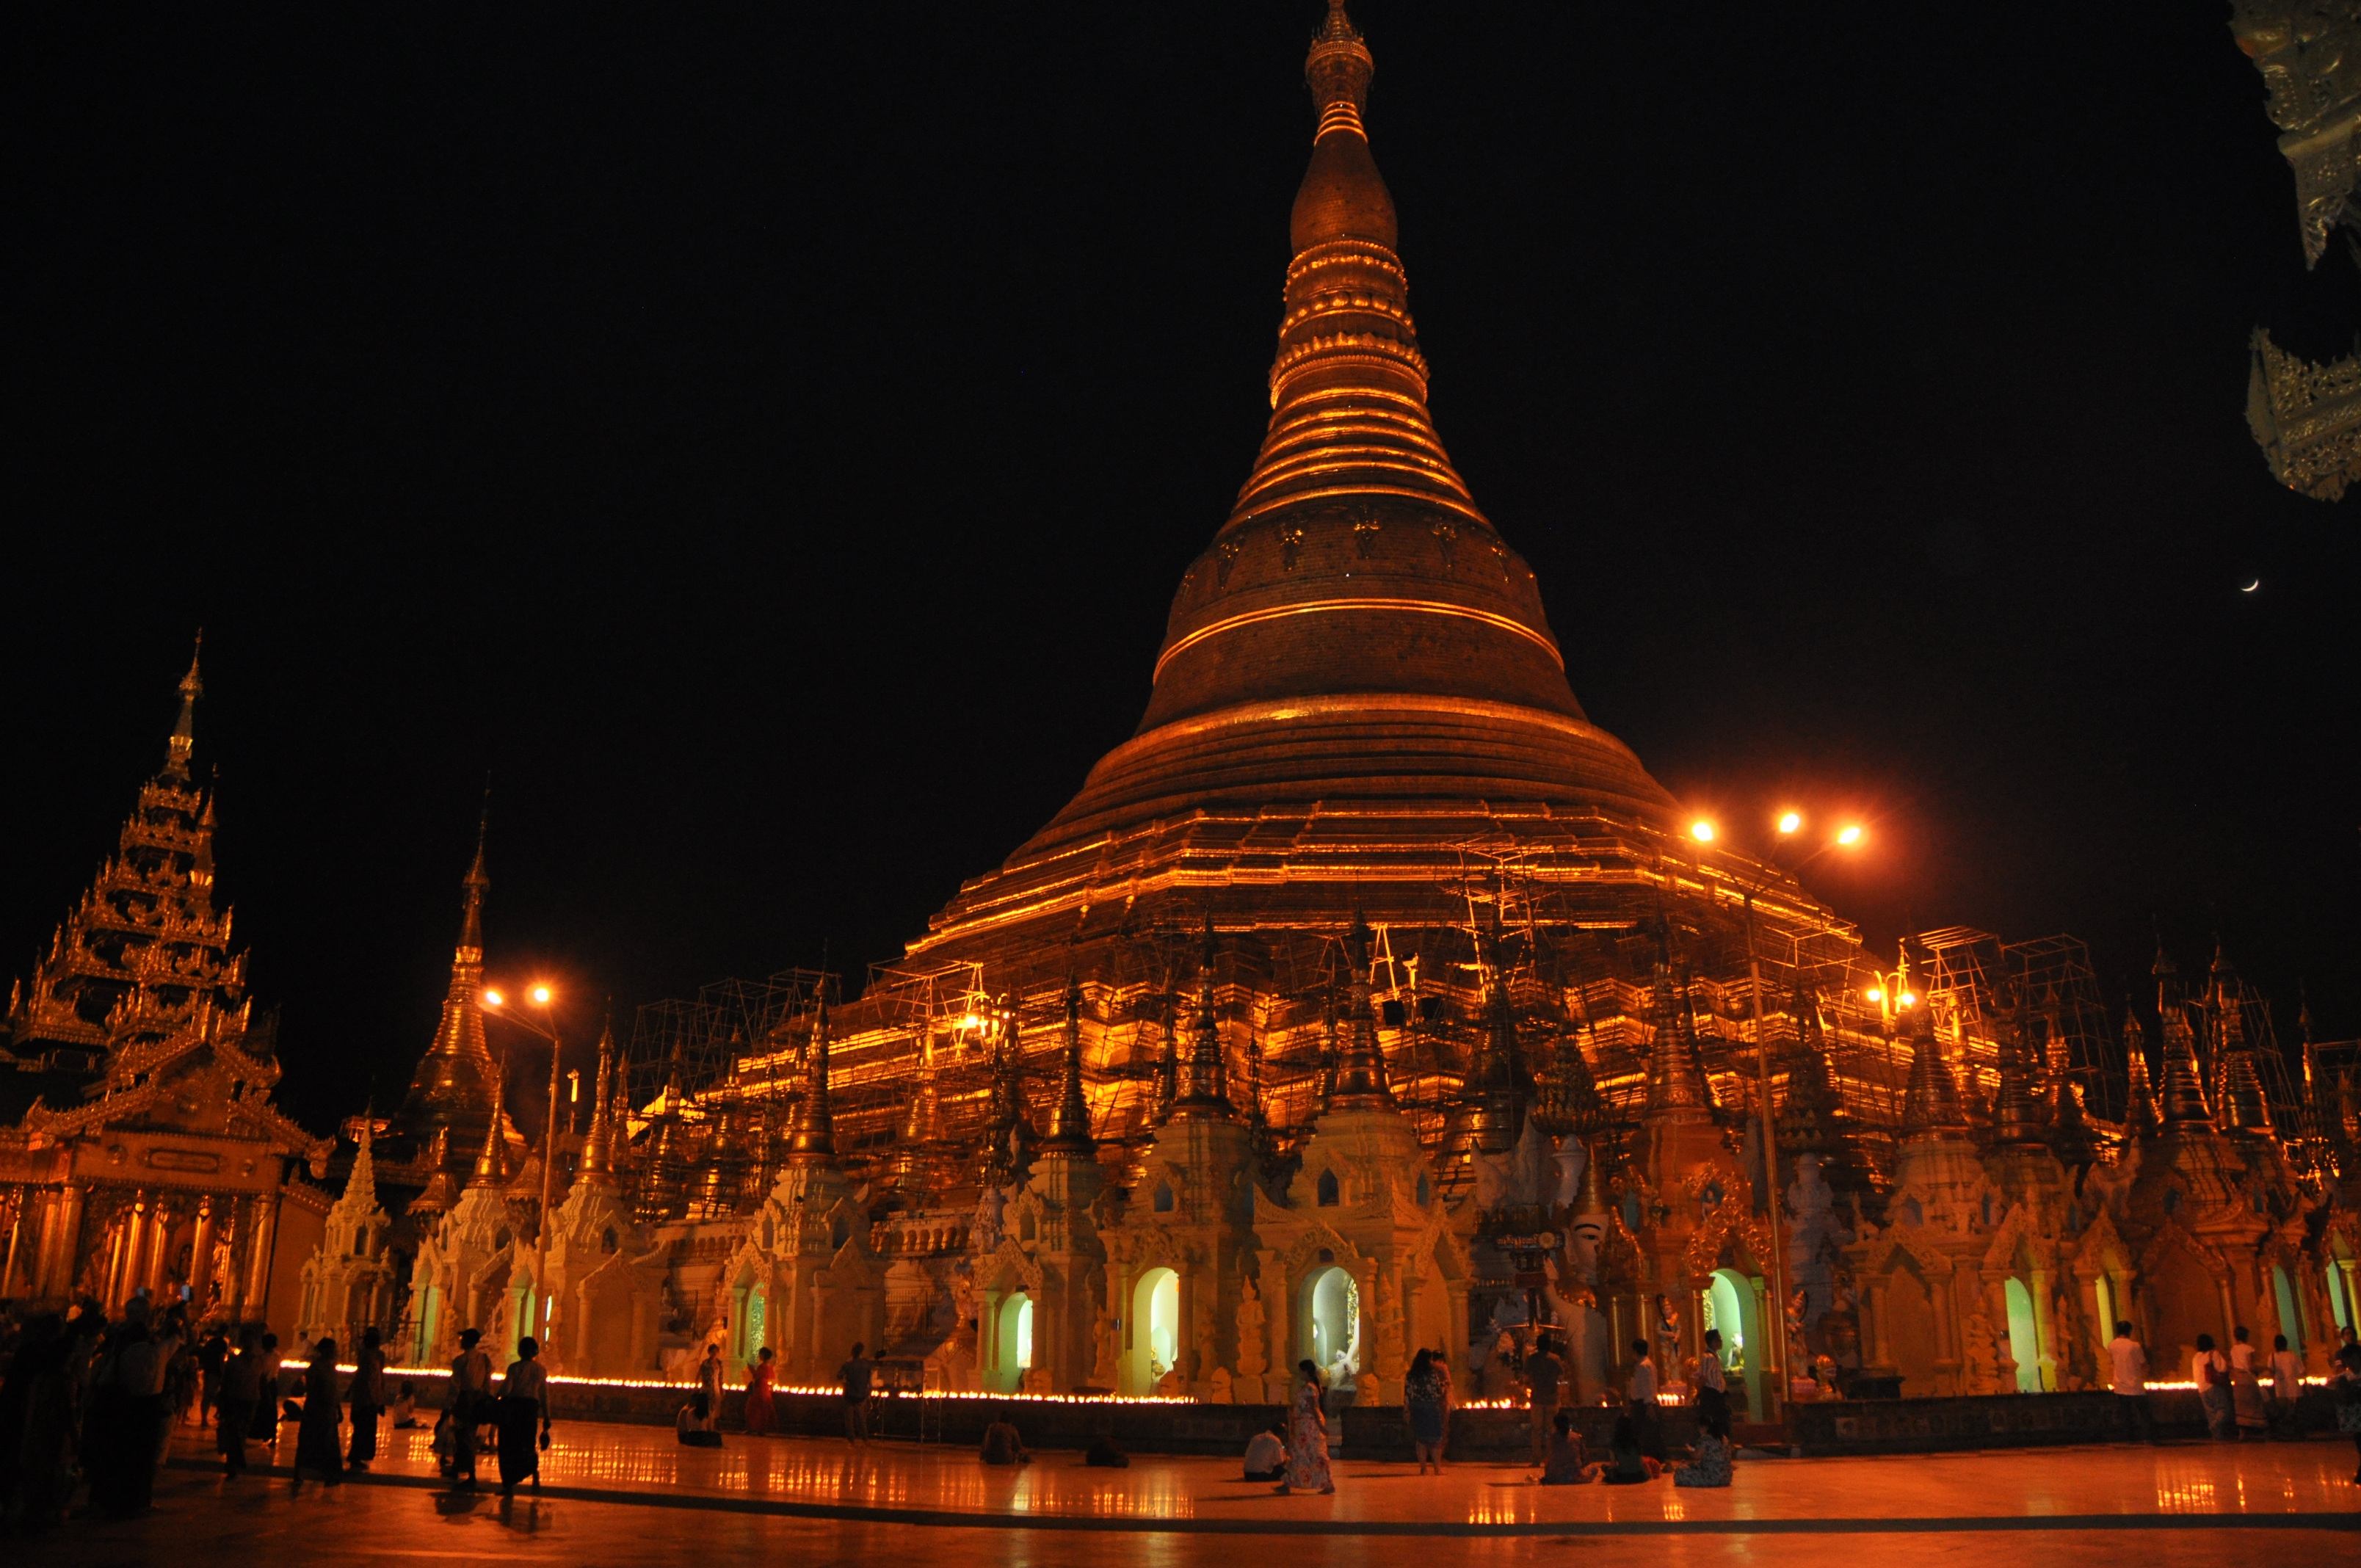 Yangon and the Shwegadon Pagoda